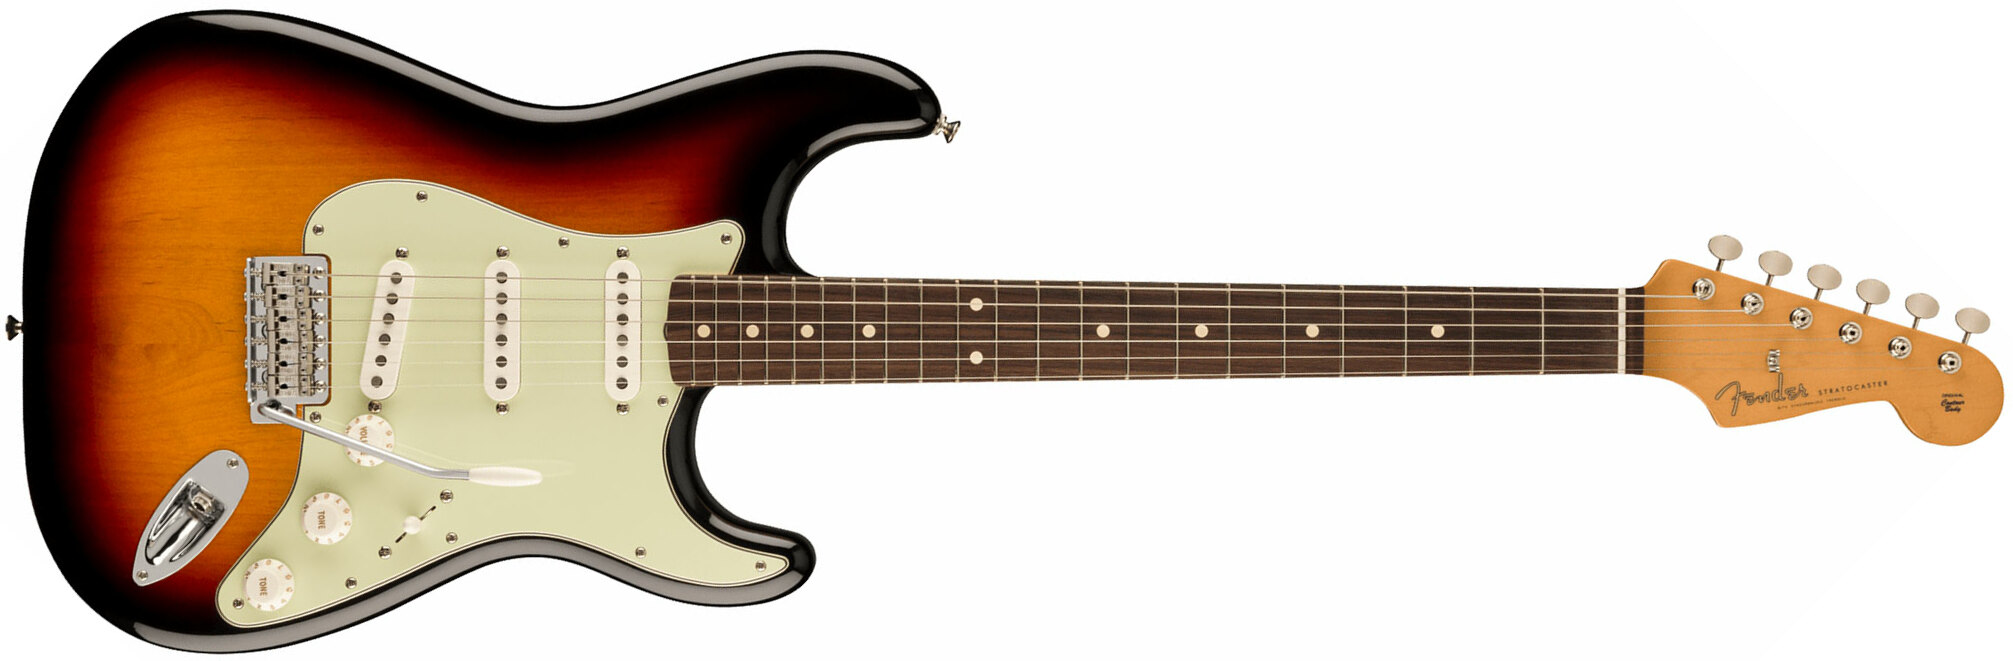 Fender Strat 60s Vintera 2 Mex 3s Trem Rw - 3-color Sunburst - Str shape electric guitar - Main picture